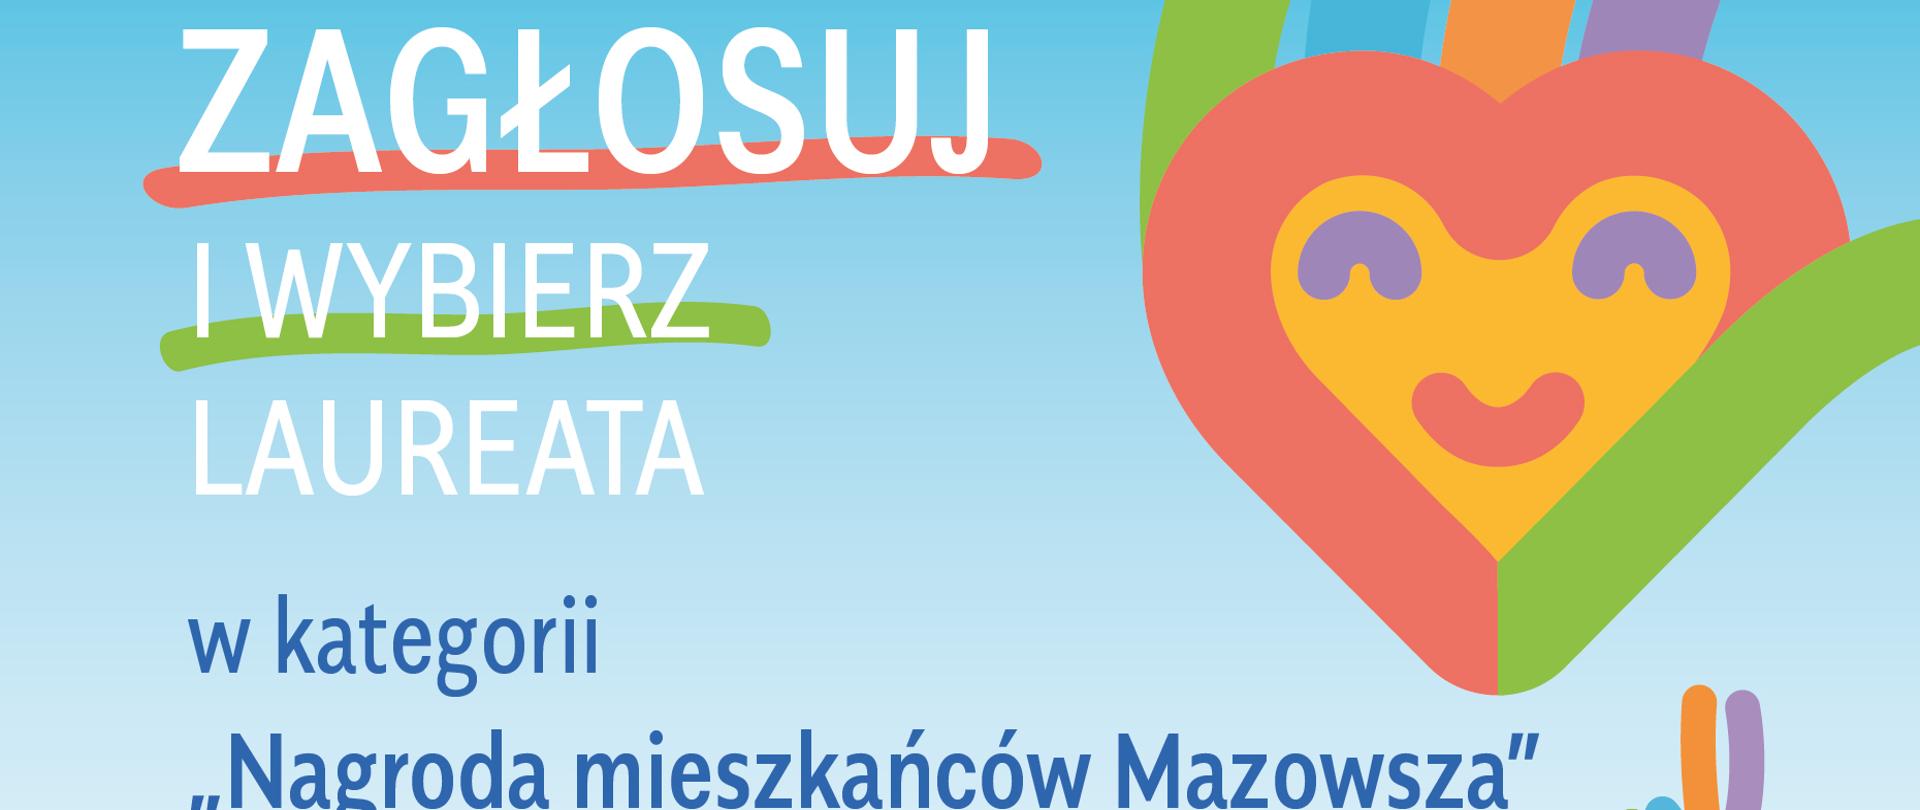 zagłosuj i wybierz laureata! w kategorii "Nagroda mieszkańców Mazowsza"